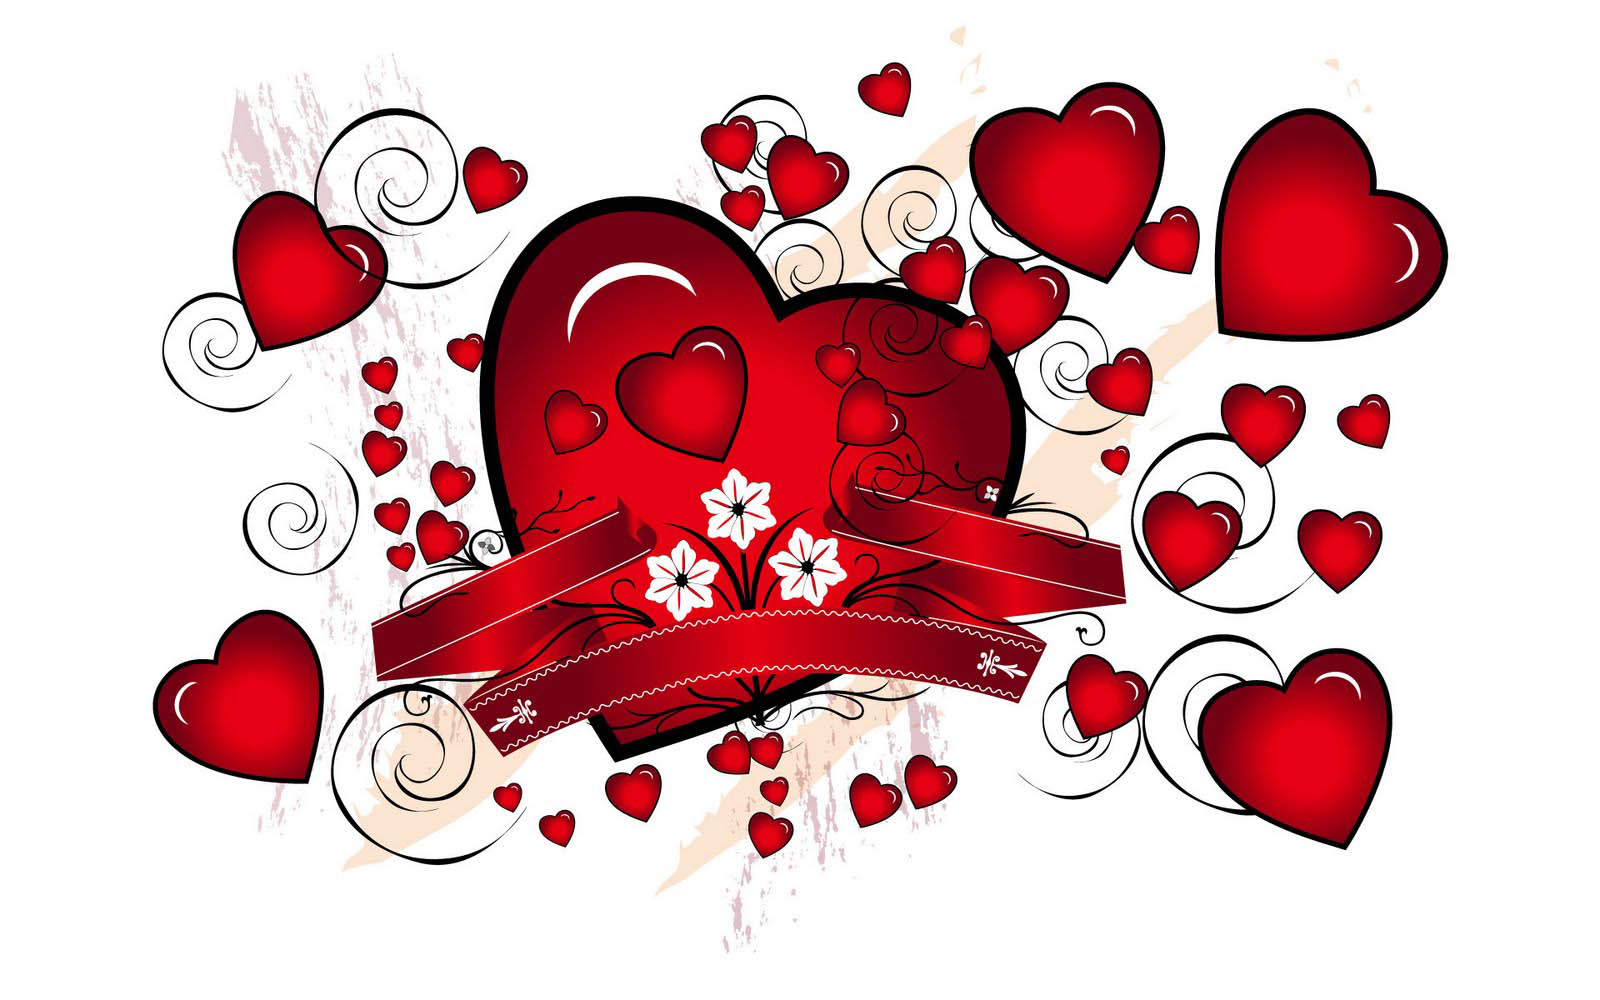 メッセージ付きの愛の壁紙,心臓,赤,愛,バレンタイン・デー,心臓